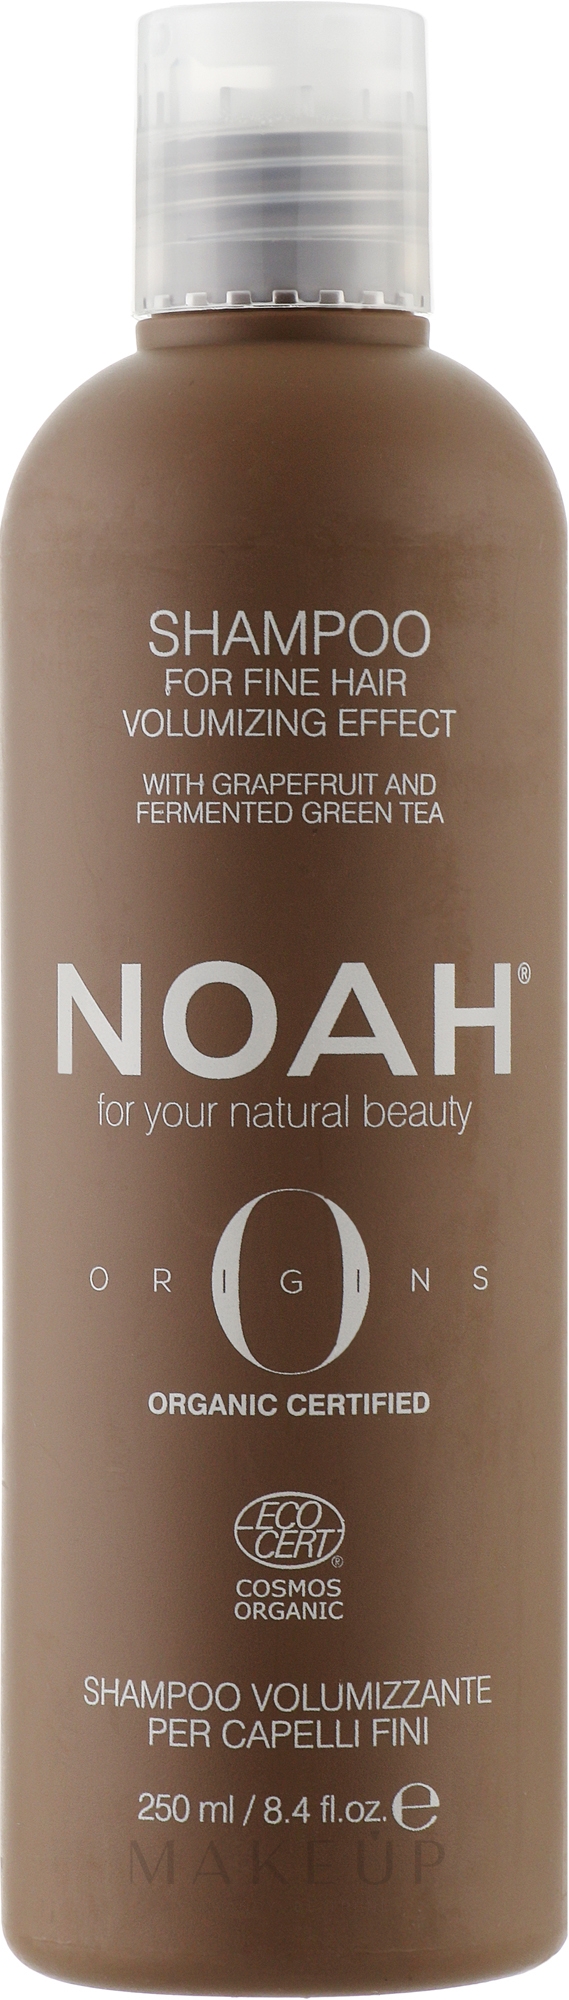 Shampoo für mehr Volumen mit Grapefruitextrakt und fermentiertem Grüntee - Noah Origins Volumizing Shampoo For Fine Hair — Bild 250 ml